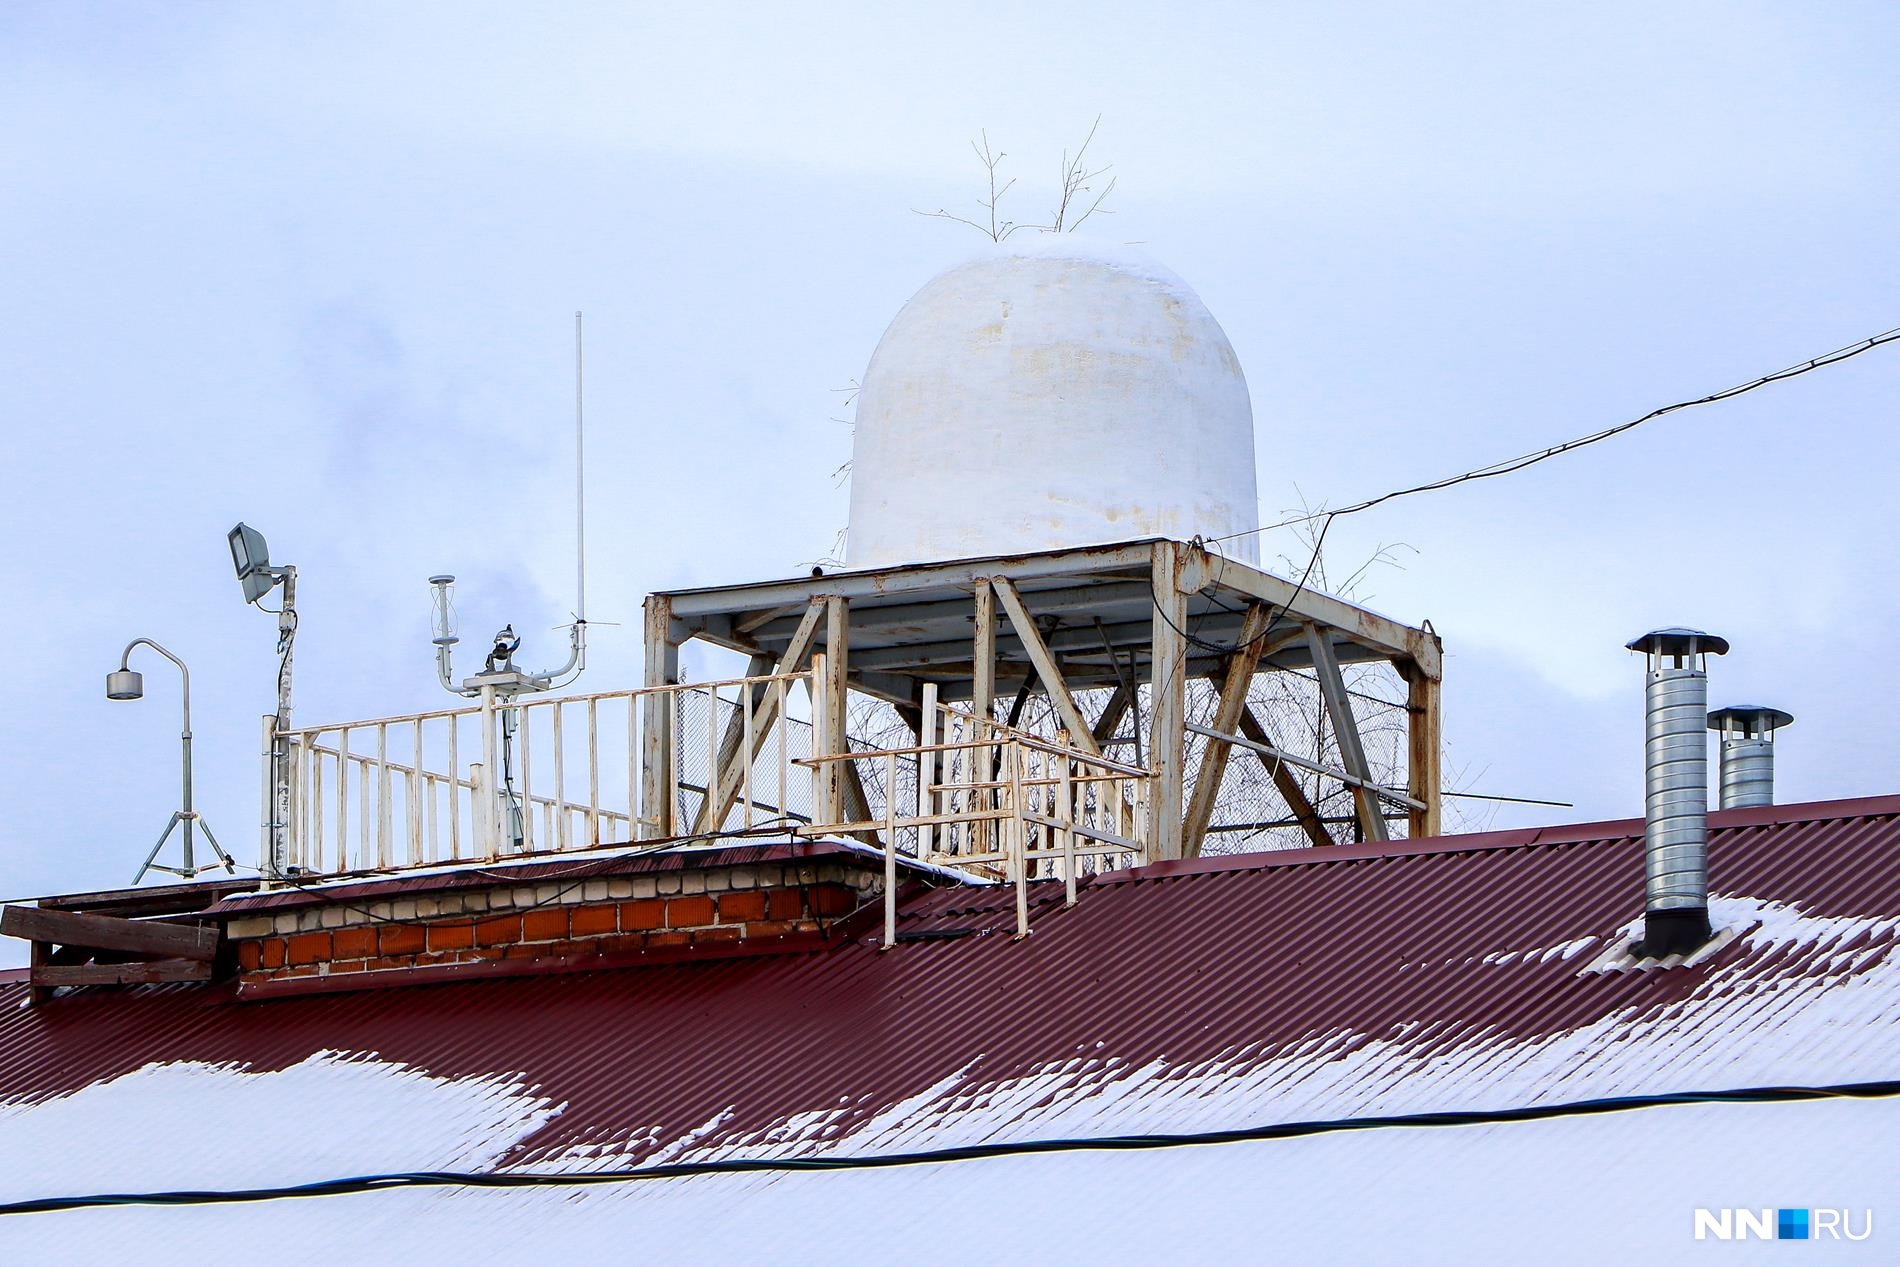 Под куполом находится антенна, которая принимает сигналы от поднявшегося в небо зонда<br><br>